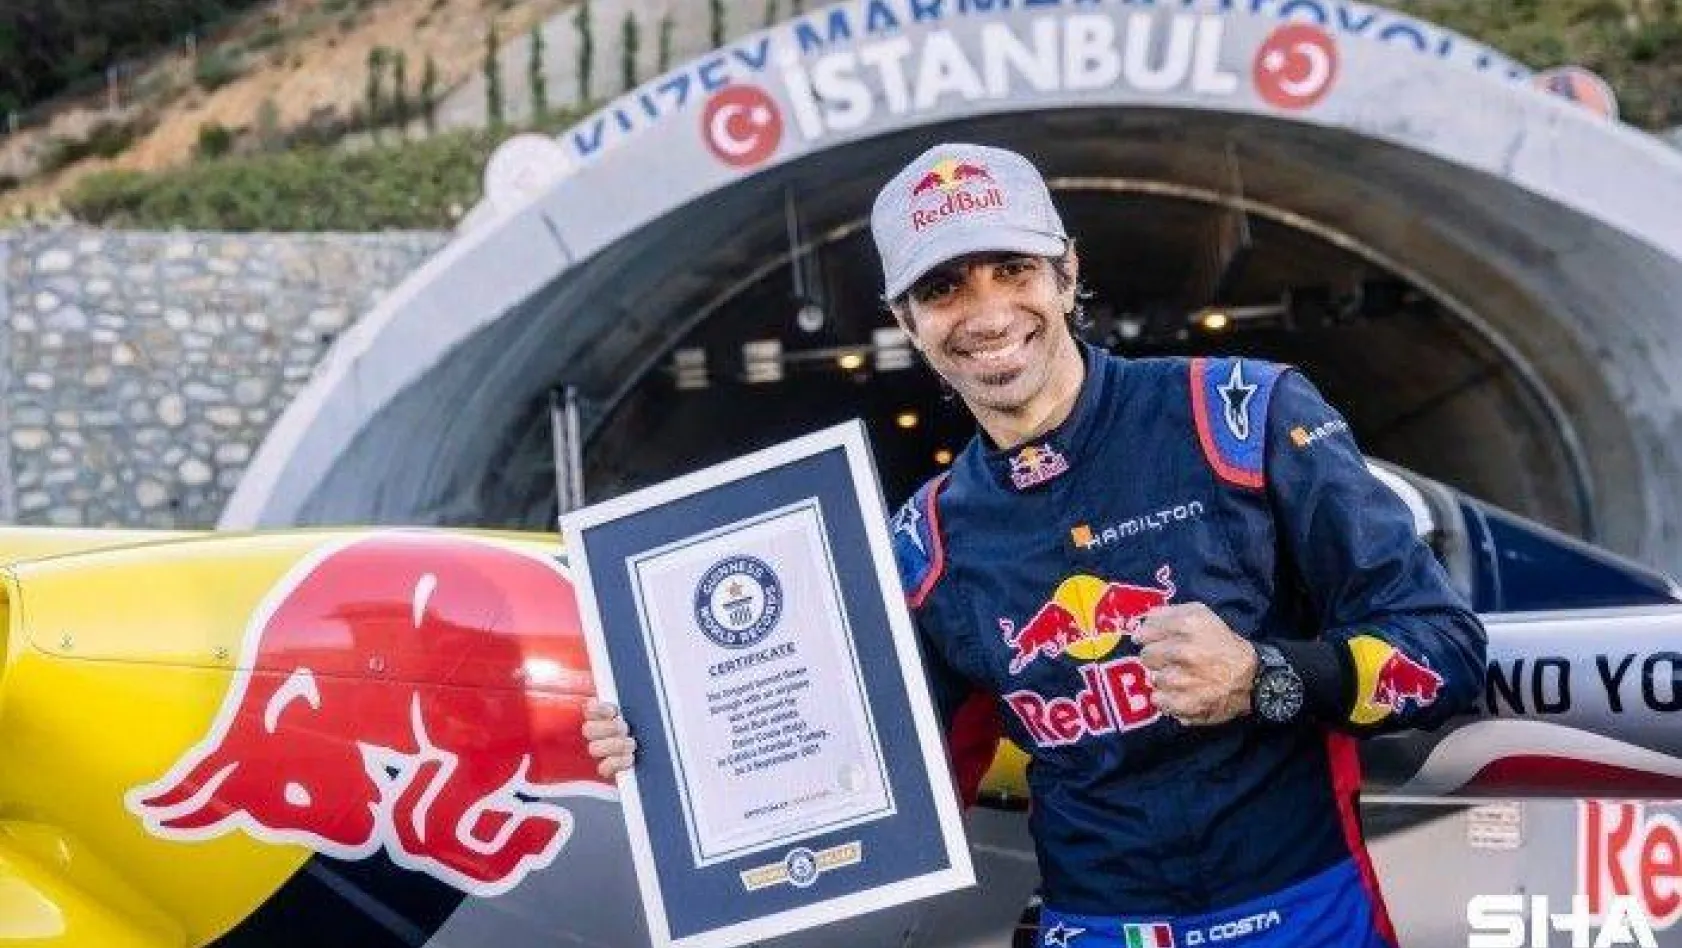 Dünya rekorlu Red Bull'un 'Tünel Geçişi' İstanbul'u dünyaya tanıttı